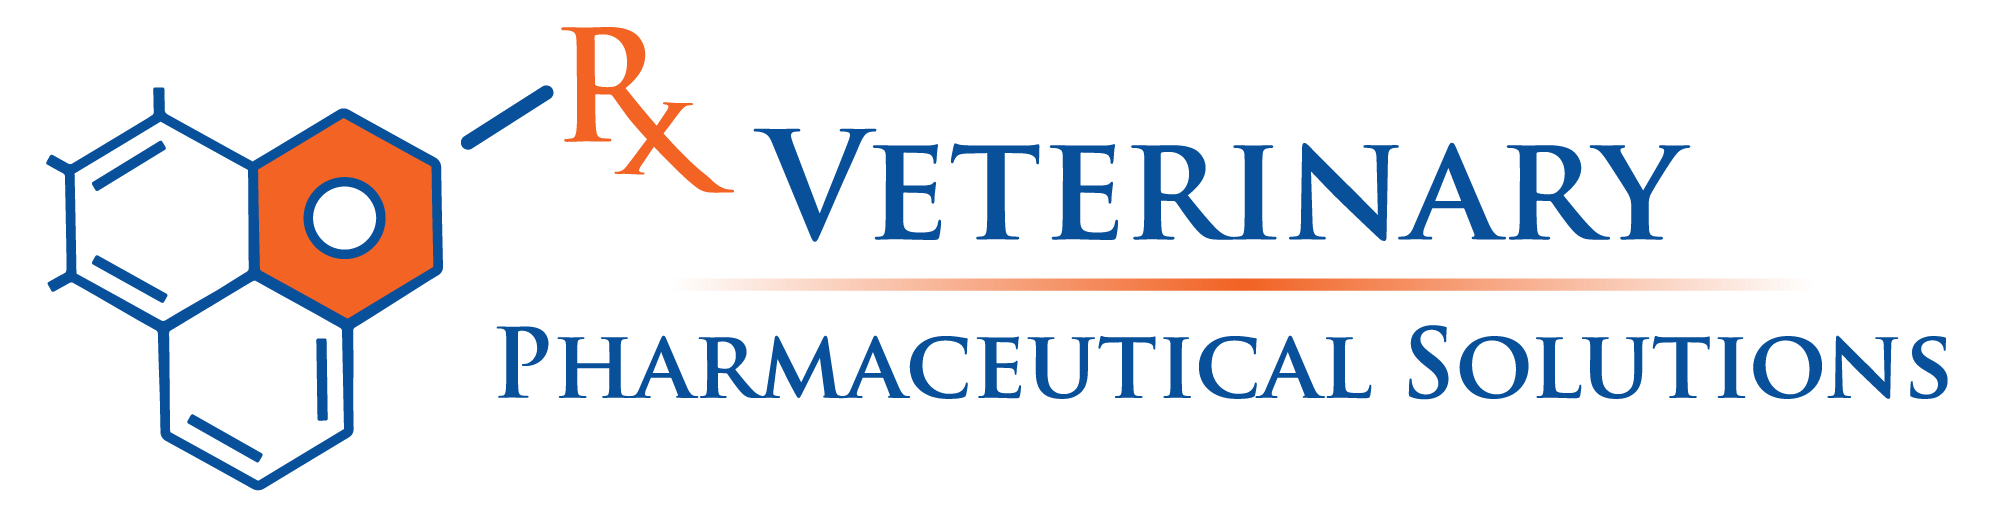 Veterinary Pharmaceutical Solutions logo